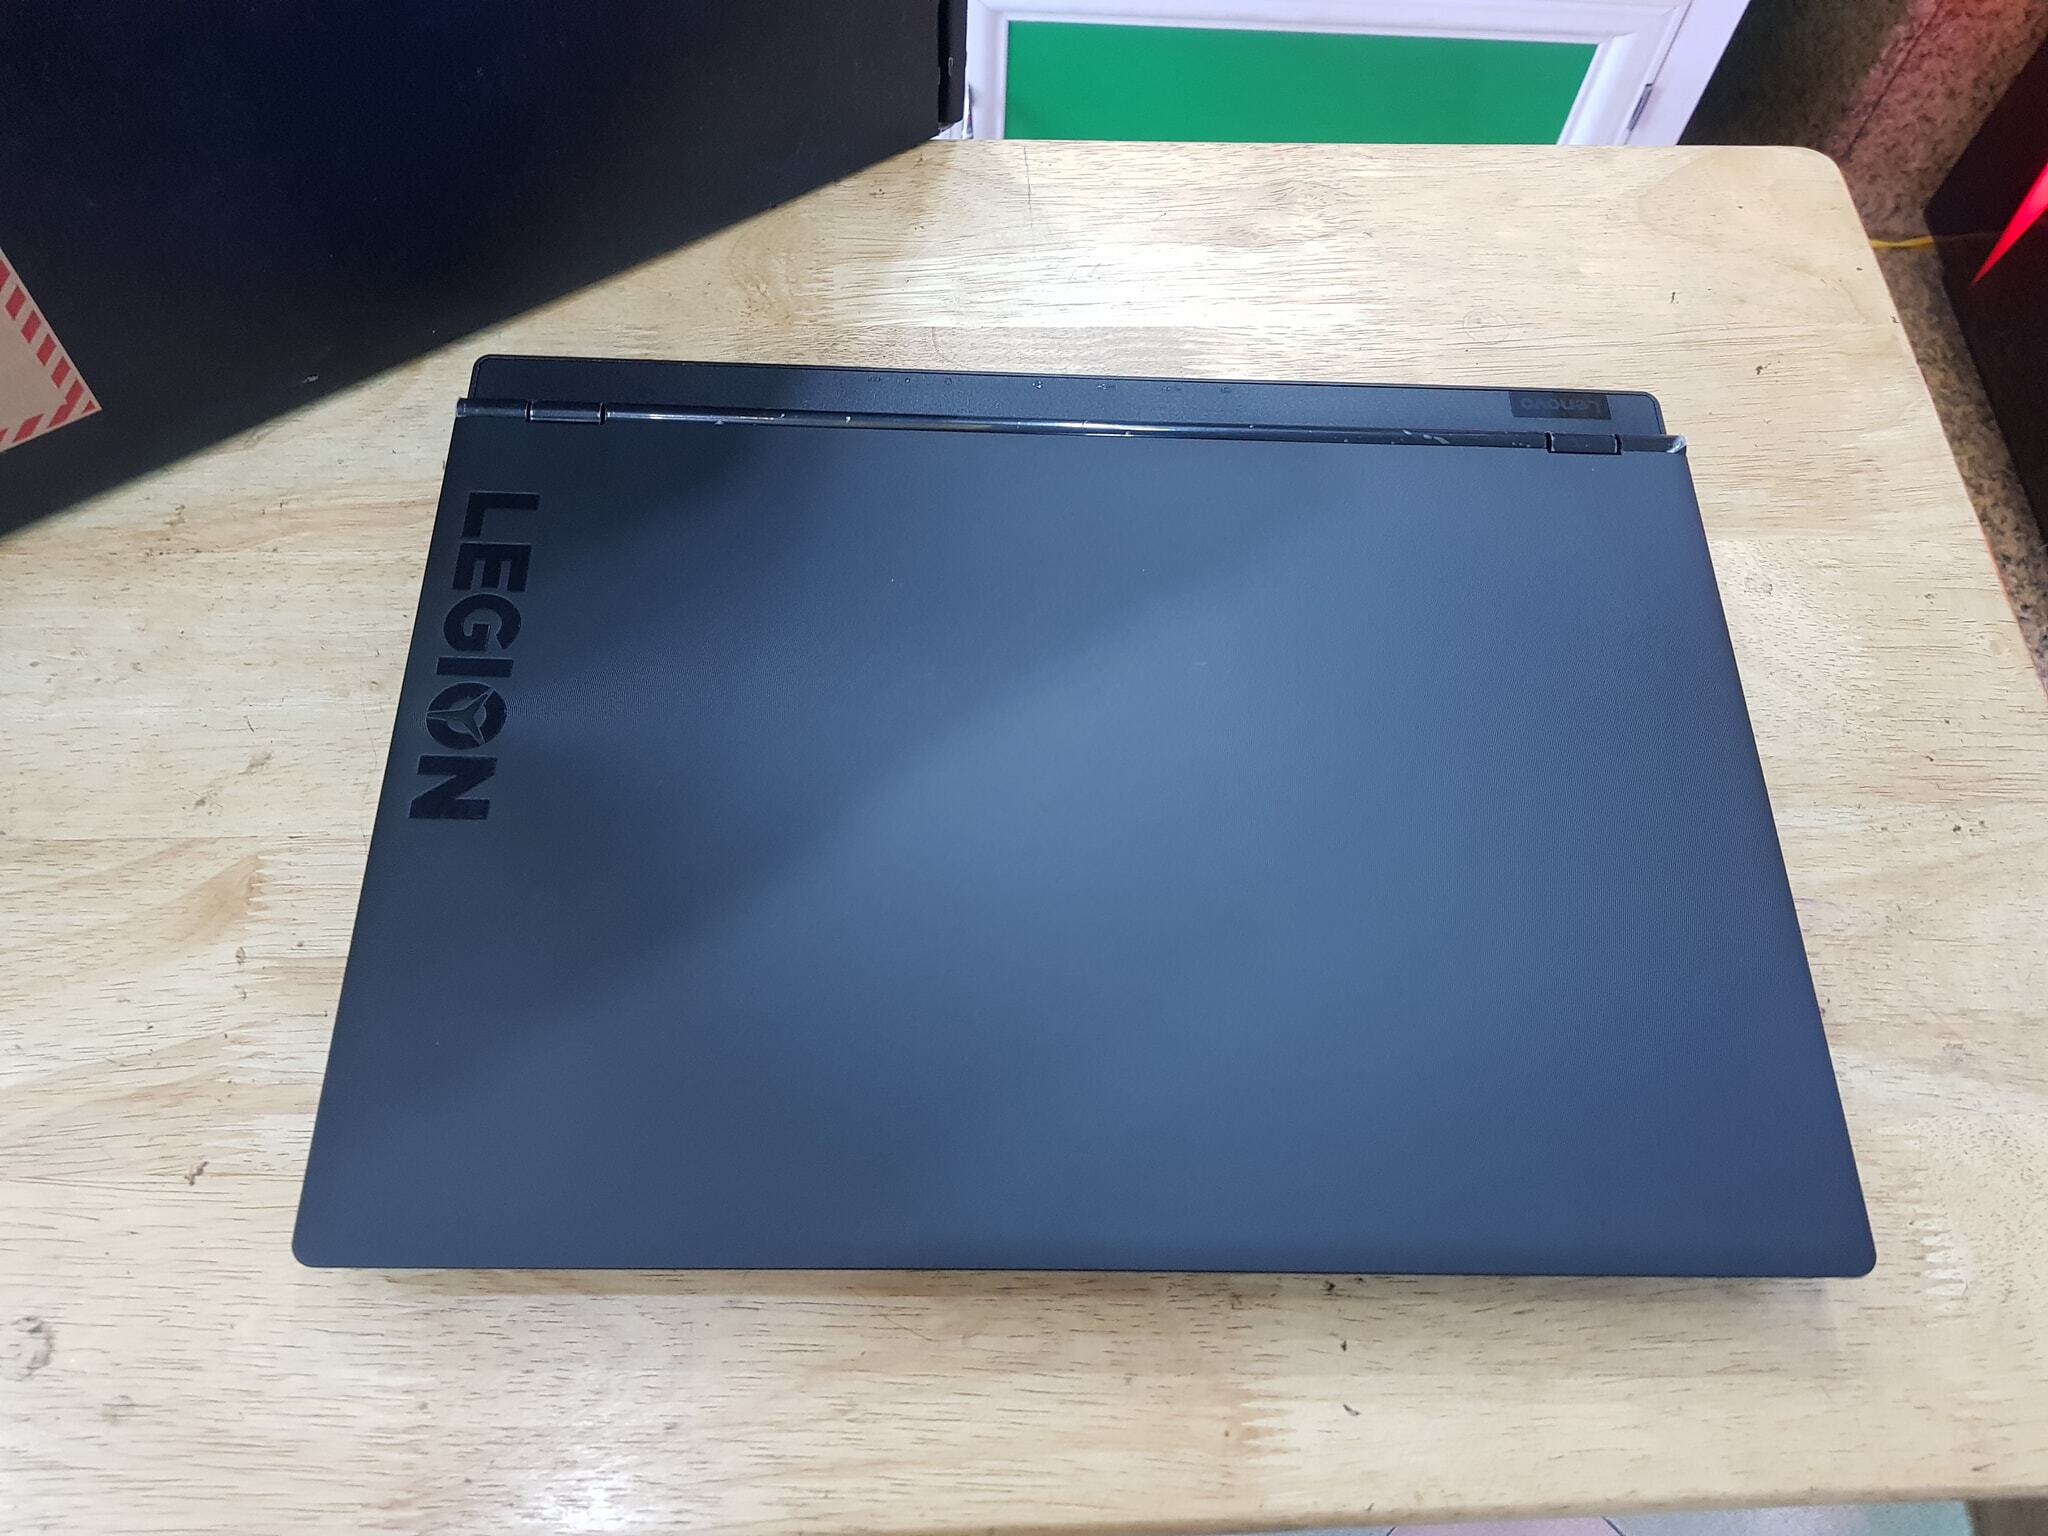 Laptop Lenovo Legion Y530-15ICH 81FV00STVN - Intel core i5, 8GB RAM, SSD 128GB + HDD 1TB, Nvidia GeForce GTX1050 with 4GB GDDR5, 15.6 inch